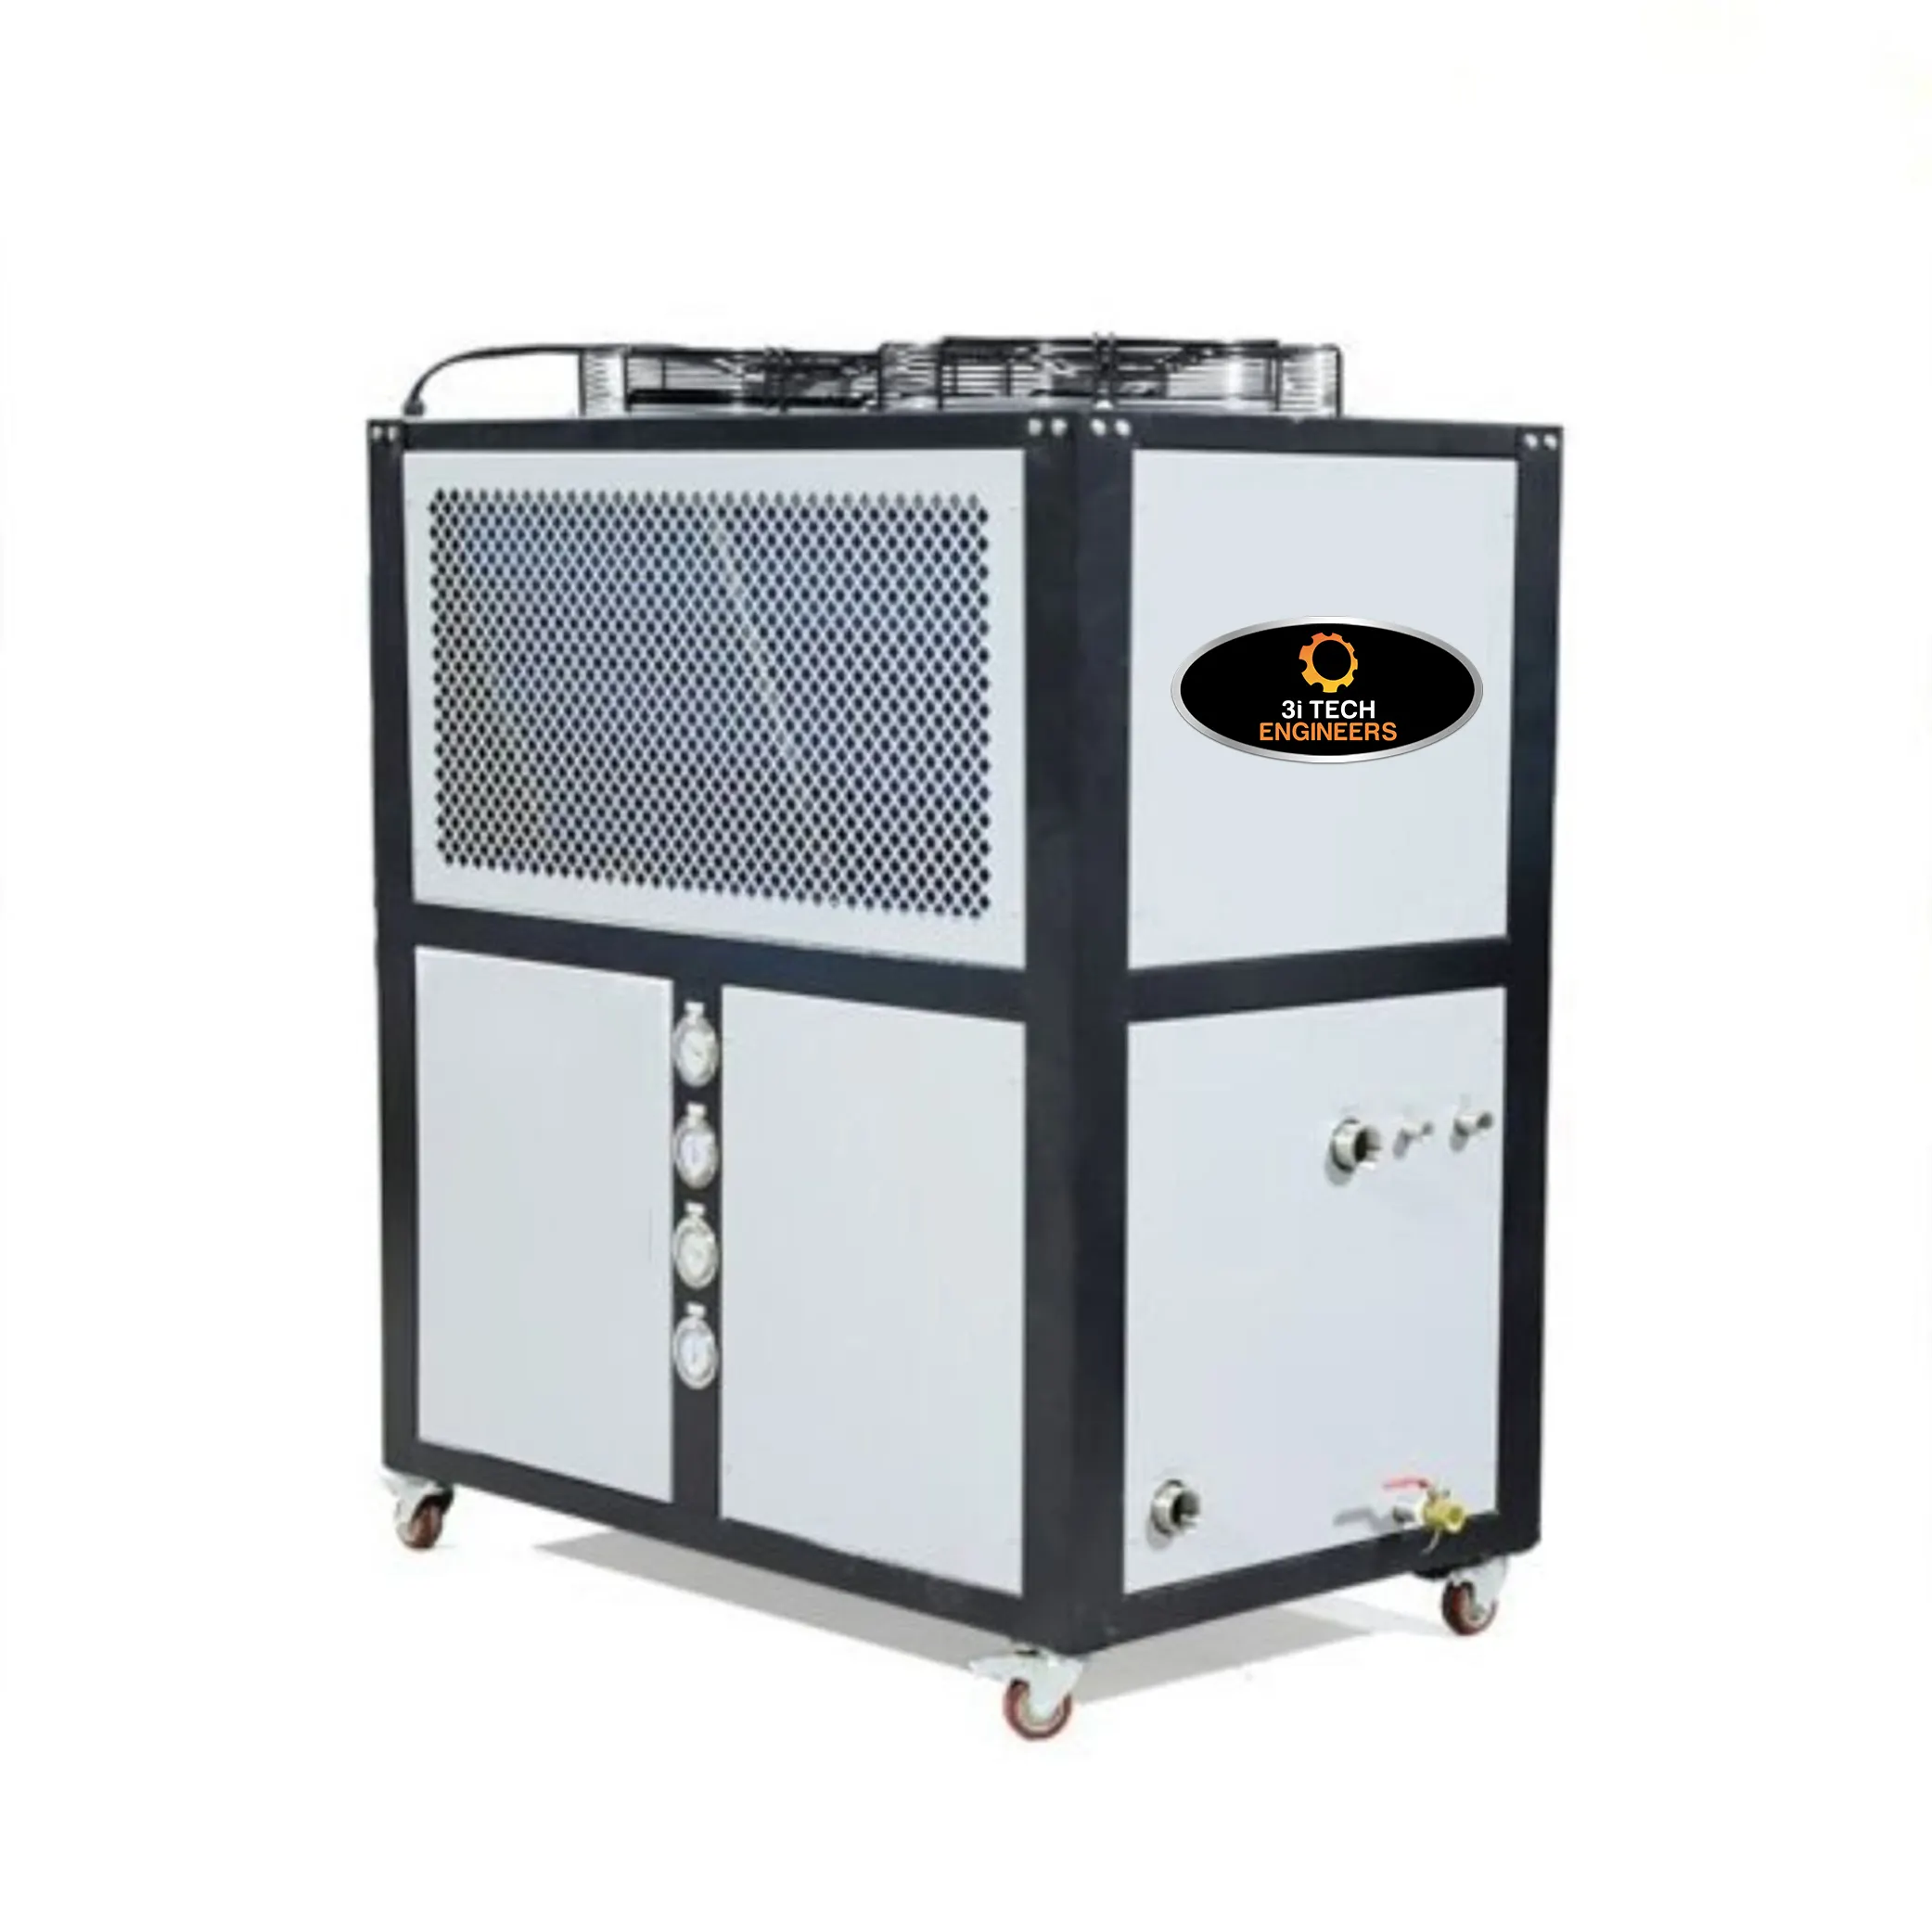 เครื่องทำความเย็นขนาดกะทัดรัด3เฟส60 TR ระบายความร้อนด้วยน้ำในอุตสาหกรรมระบบอัตโนมัติเต็มรูปแบบผลิตจากอินเดีย